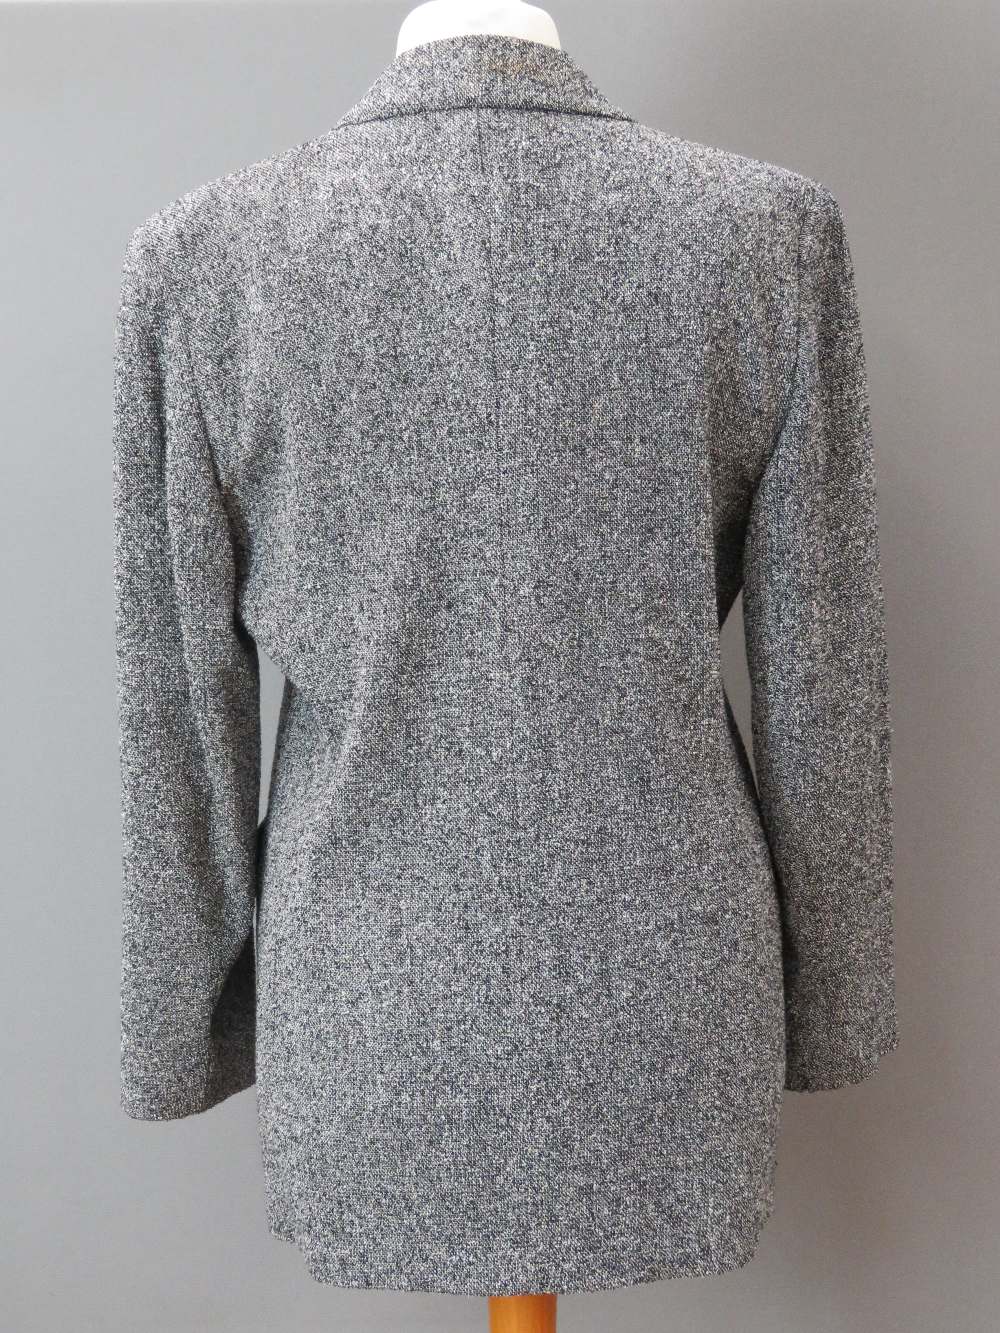 A ladies 40% wool jacket by Windsmoor. - Image 2 of 4